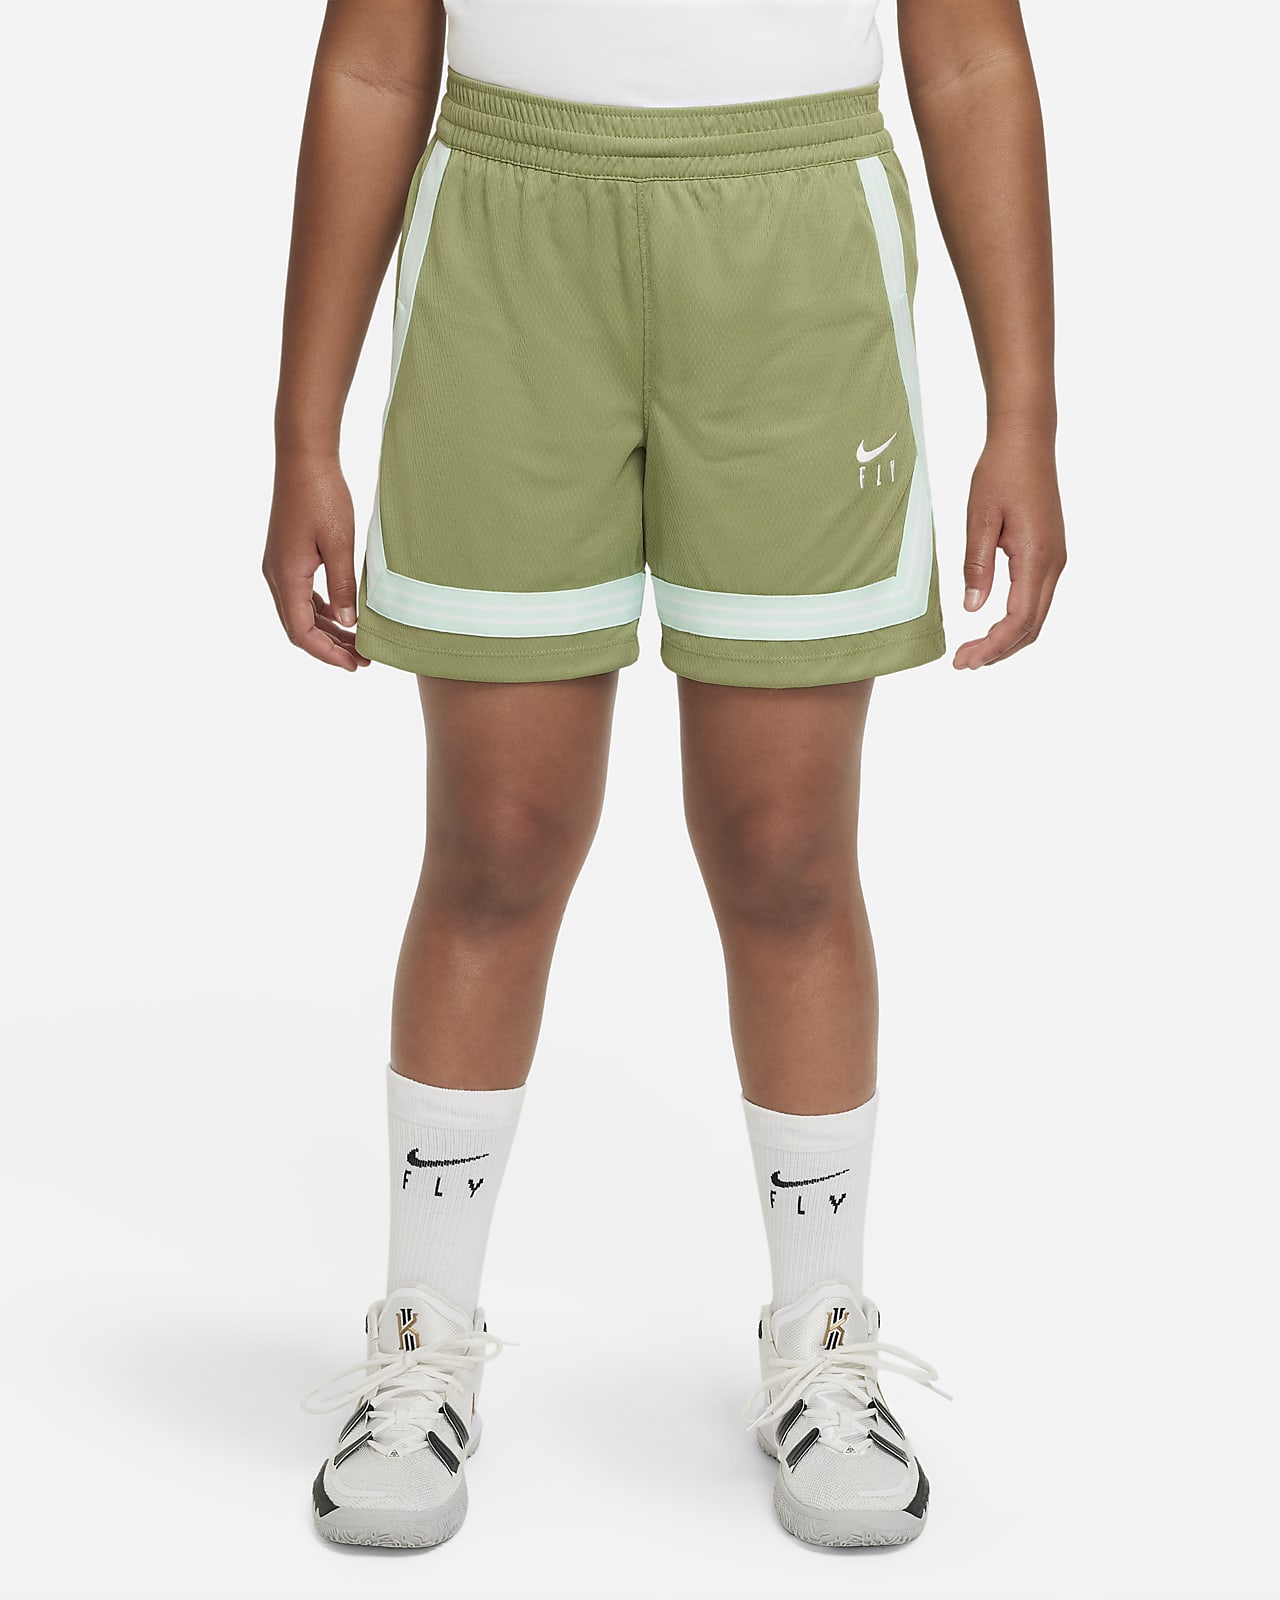 Shorts de básquetbol para niña talla grande Nike Dri-FIT Fly Crossover (talla amplia)